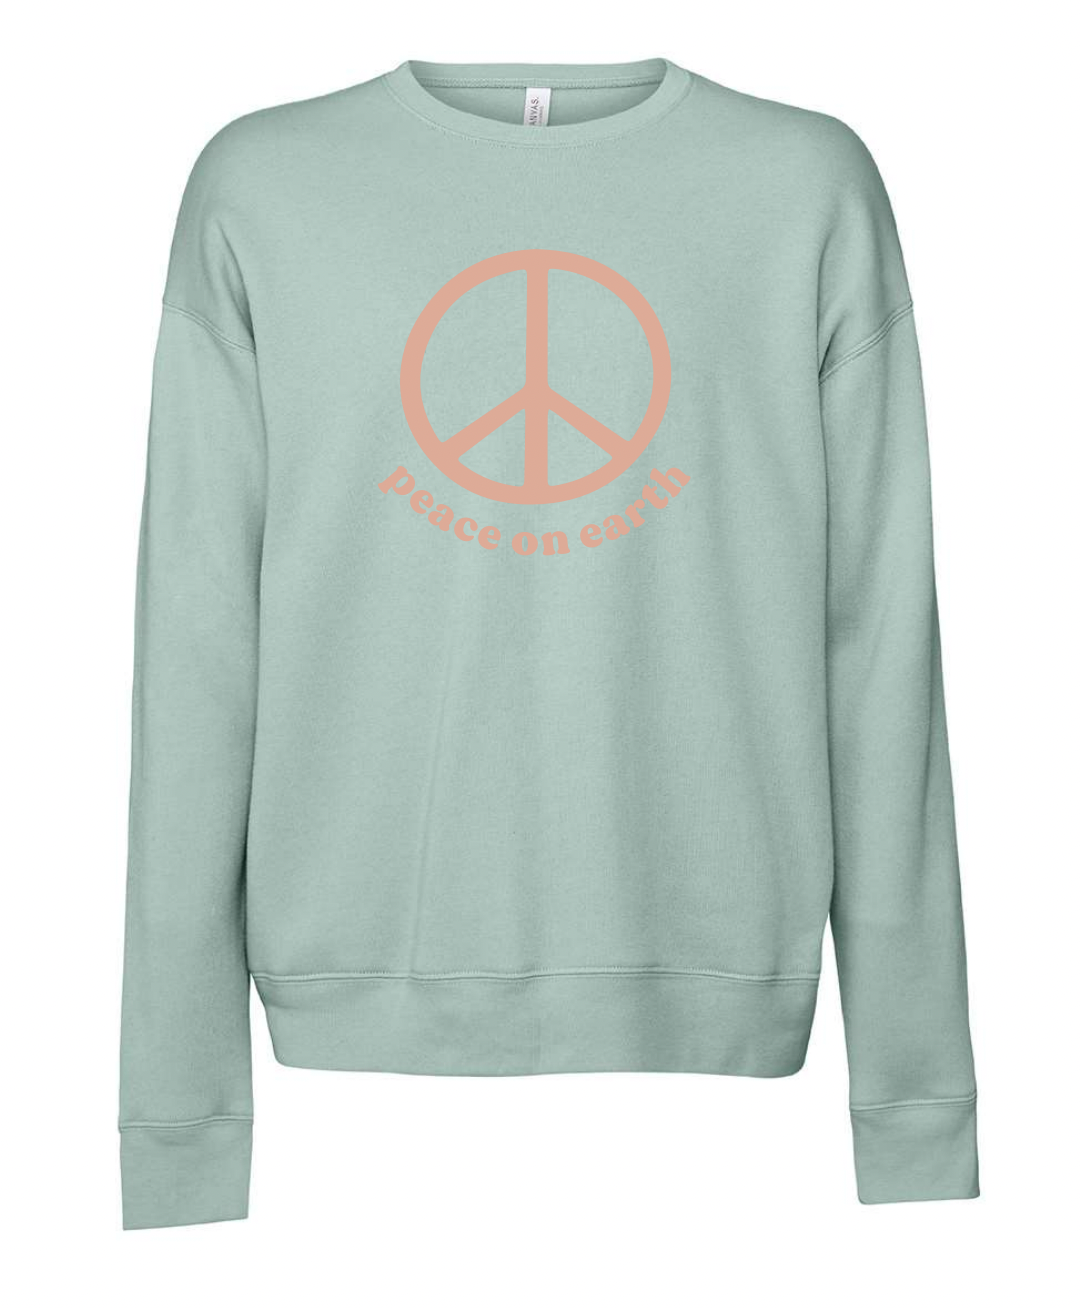 Peace on Earth Adult Sweatshirt - Dusty Blue